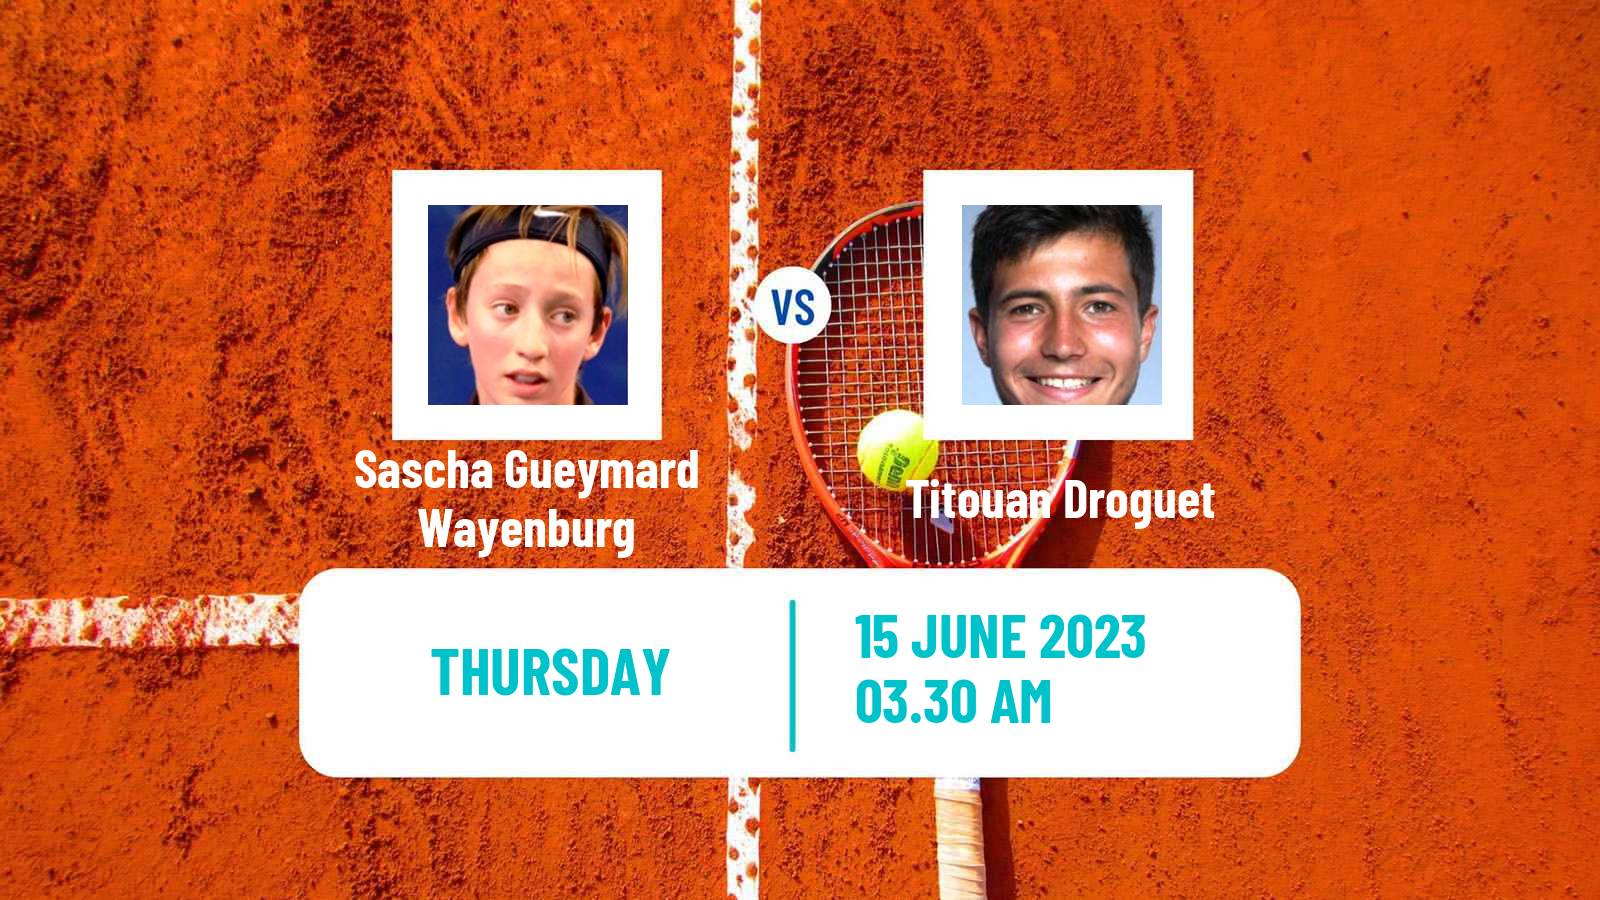 Tennis ITF M25 Grasse Men Sascha Gueymard Wayenburg - Titouan Droguet